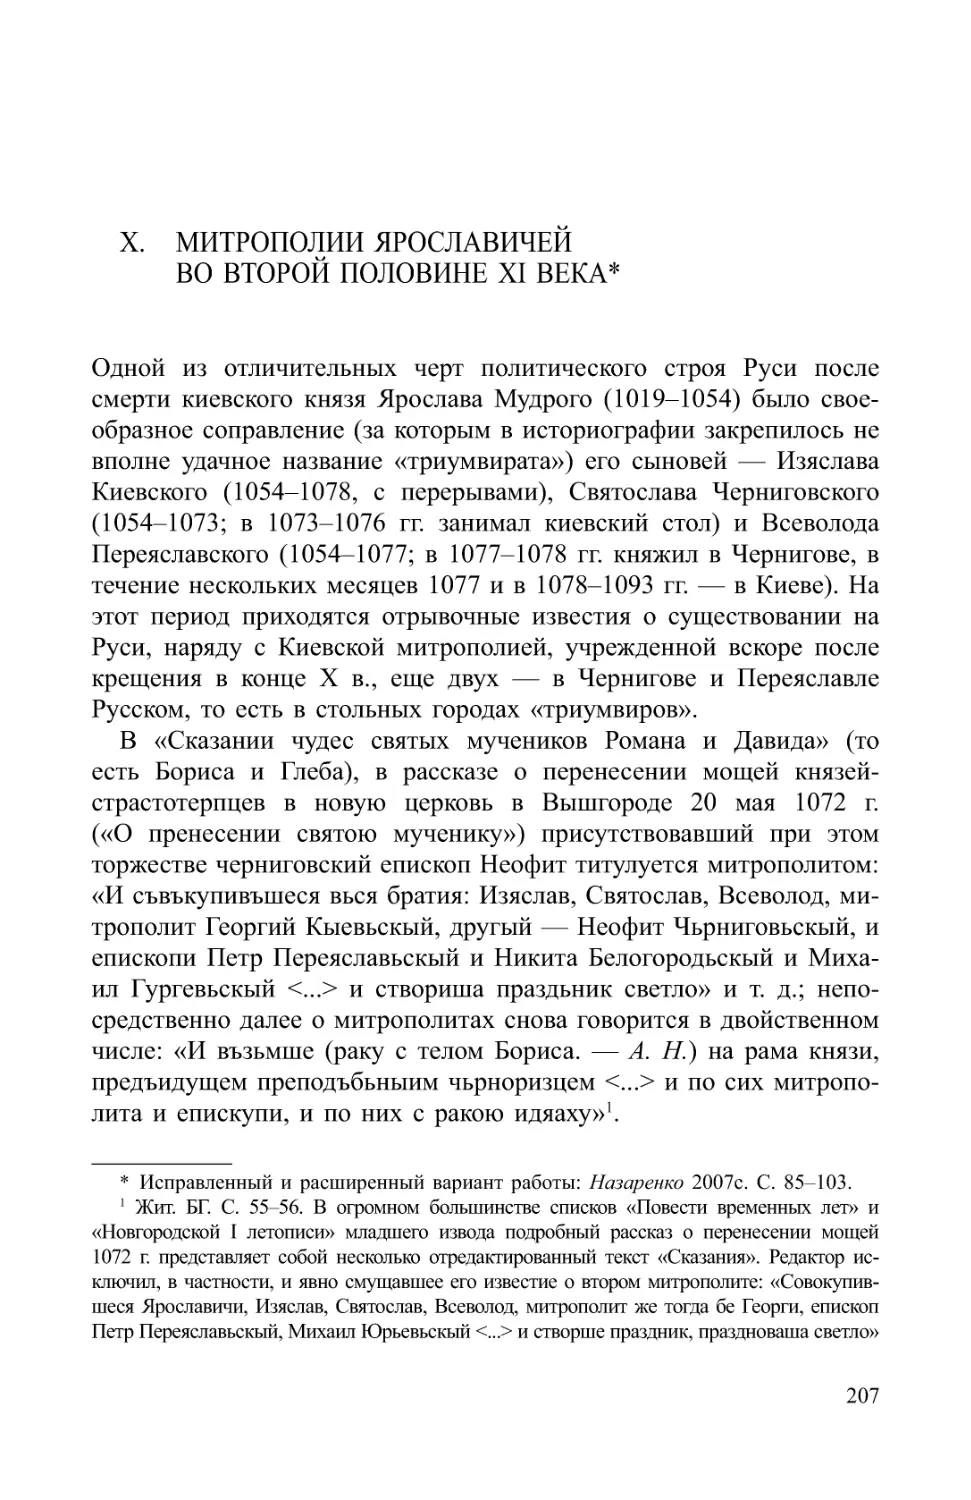 X. Митрополии Ярославичей во второй половине XI века